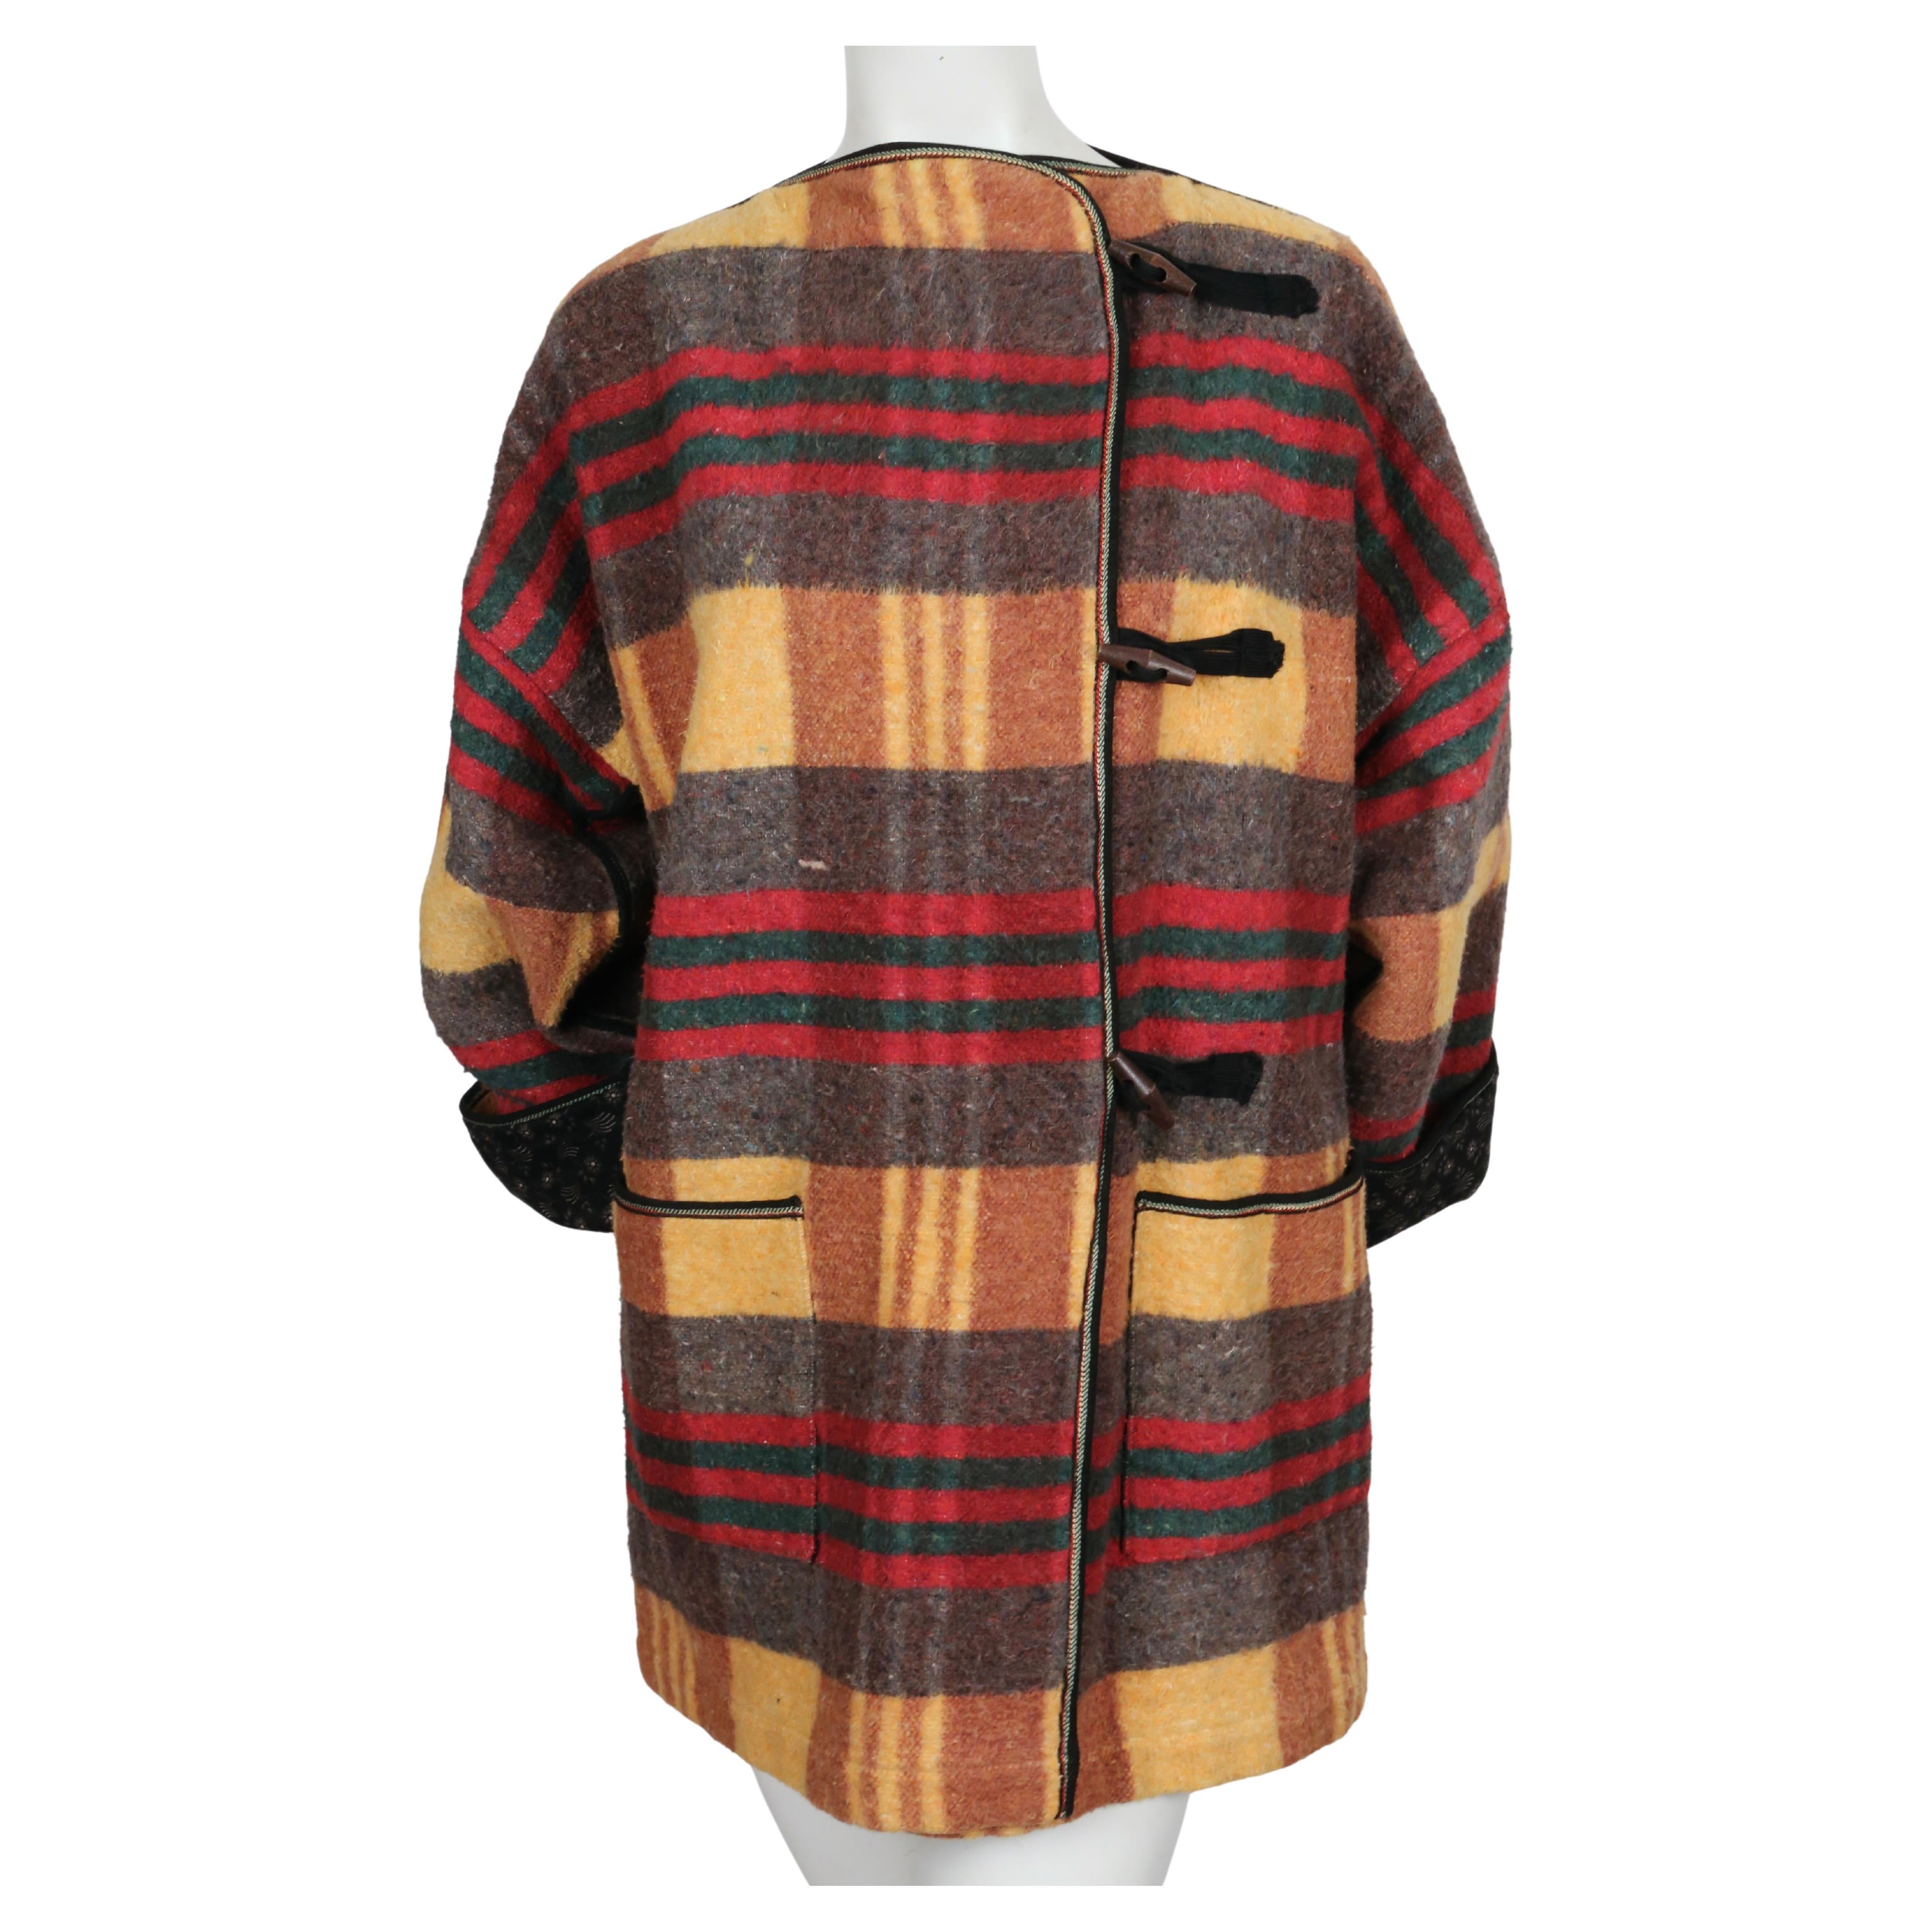 Très rare, veste de couverture écossaise doublée d'un tissu calicot fleuri dessinée par Jean-Charles de Castelbajac datant des années 1970. Très rare étiquette 